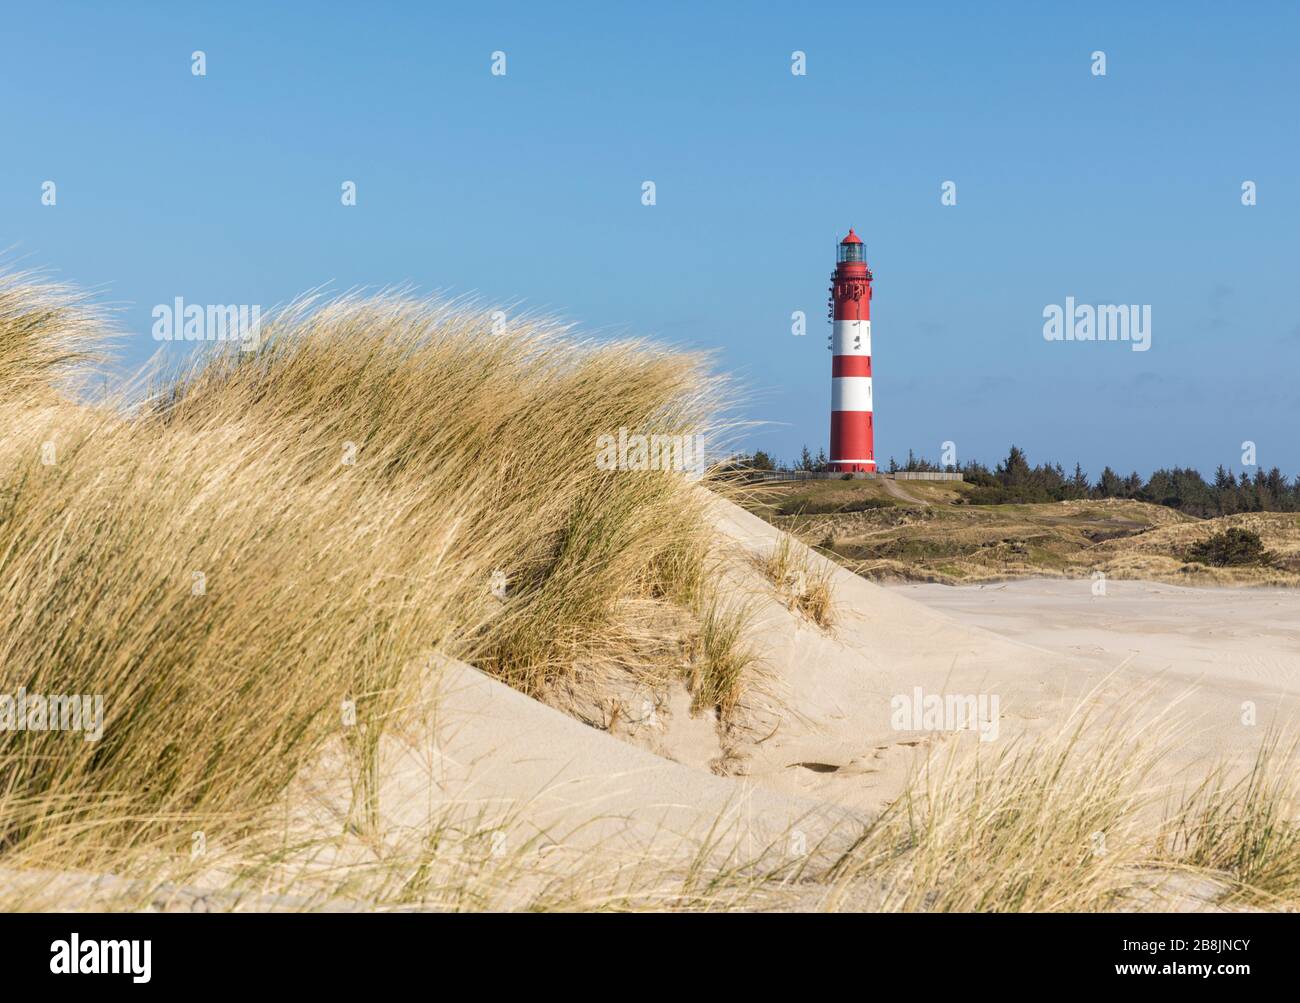 Leuchtturm von Amrum, Blick vom Strand mit Dünengras im Vordergrund Stockfoto